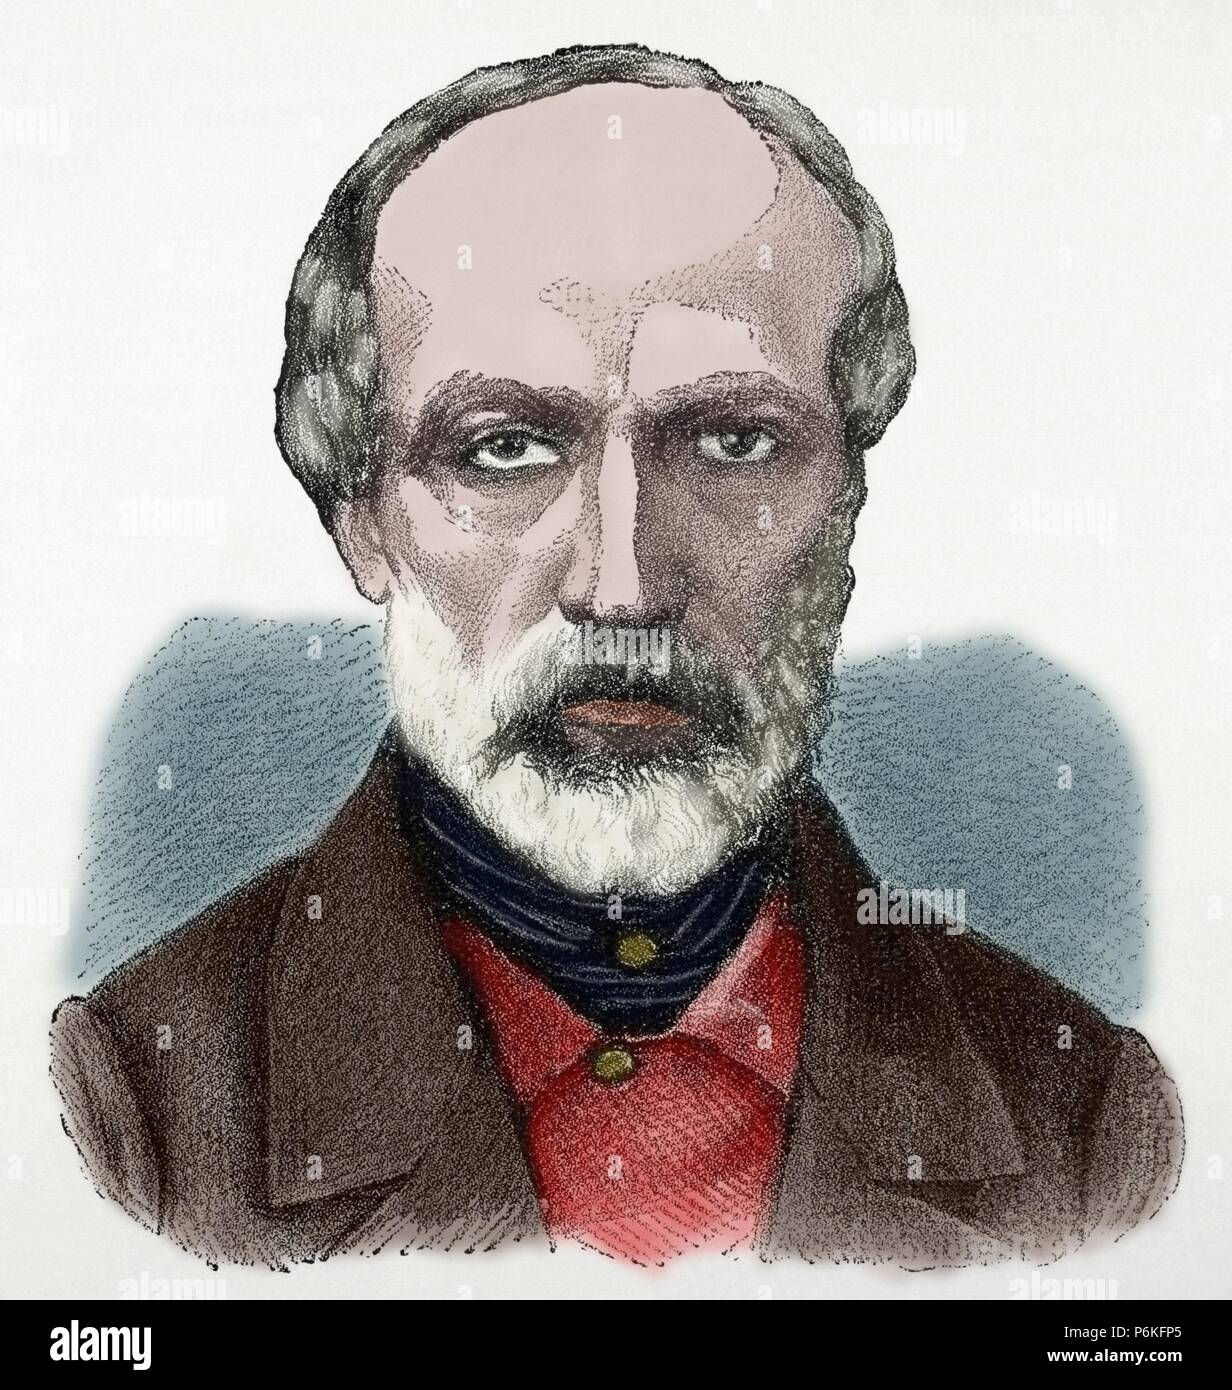 Giuseppe Mazzini (1805-1872). Italienischer Politiker, Aktivist für die Einigung Italiens. Kupferstich von Klose. Nuestro Siglo, 1883. Farbige. Stockfoto